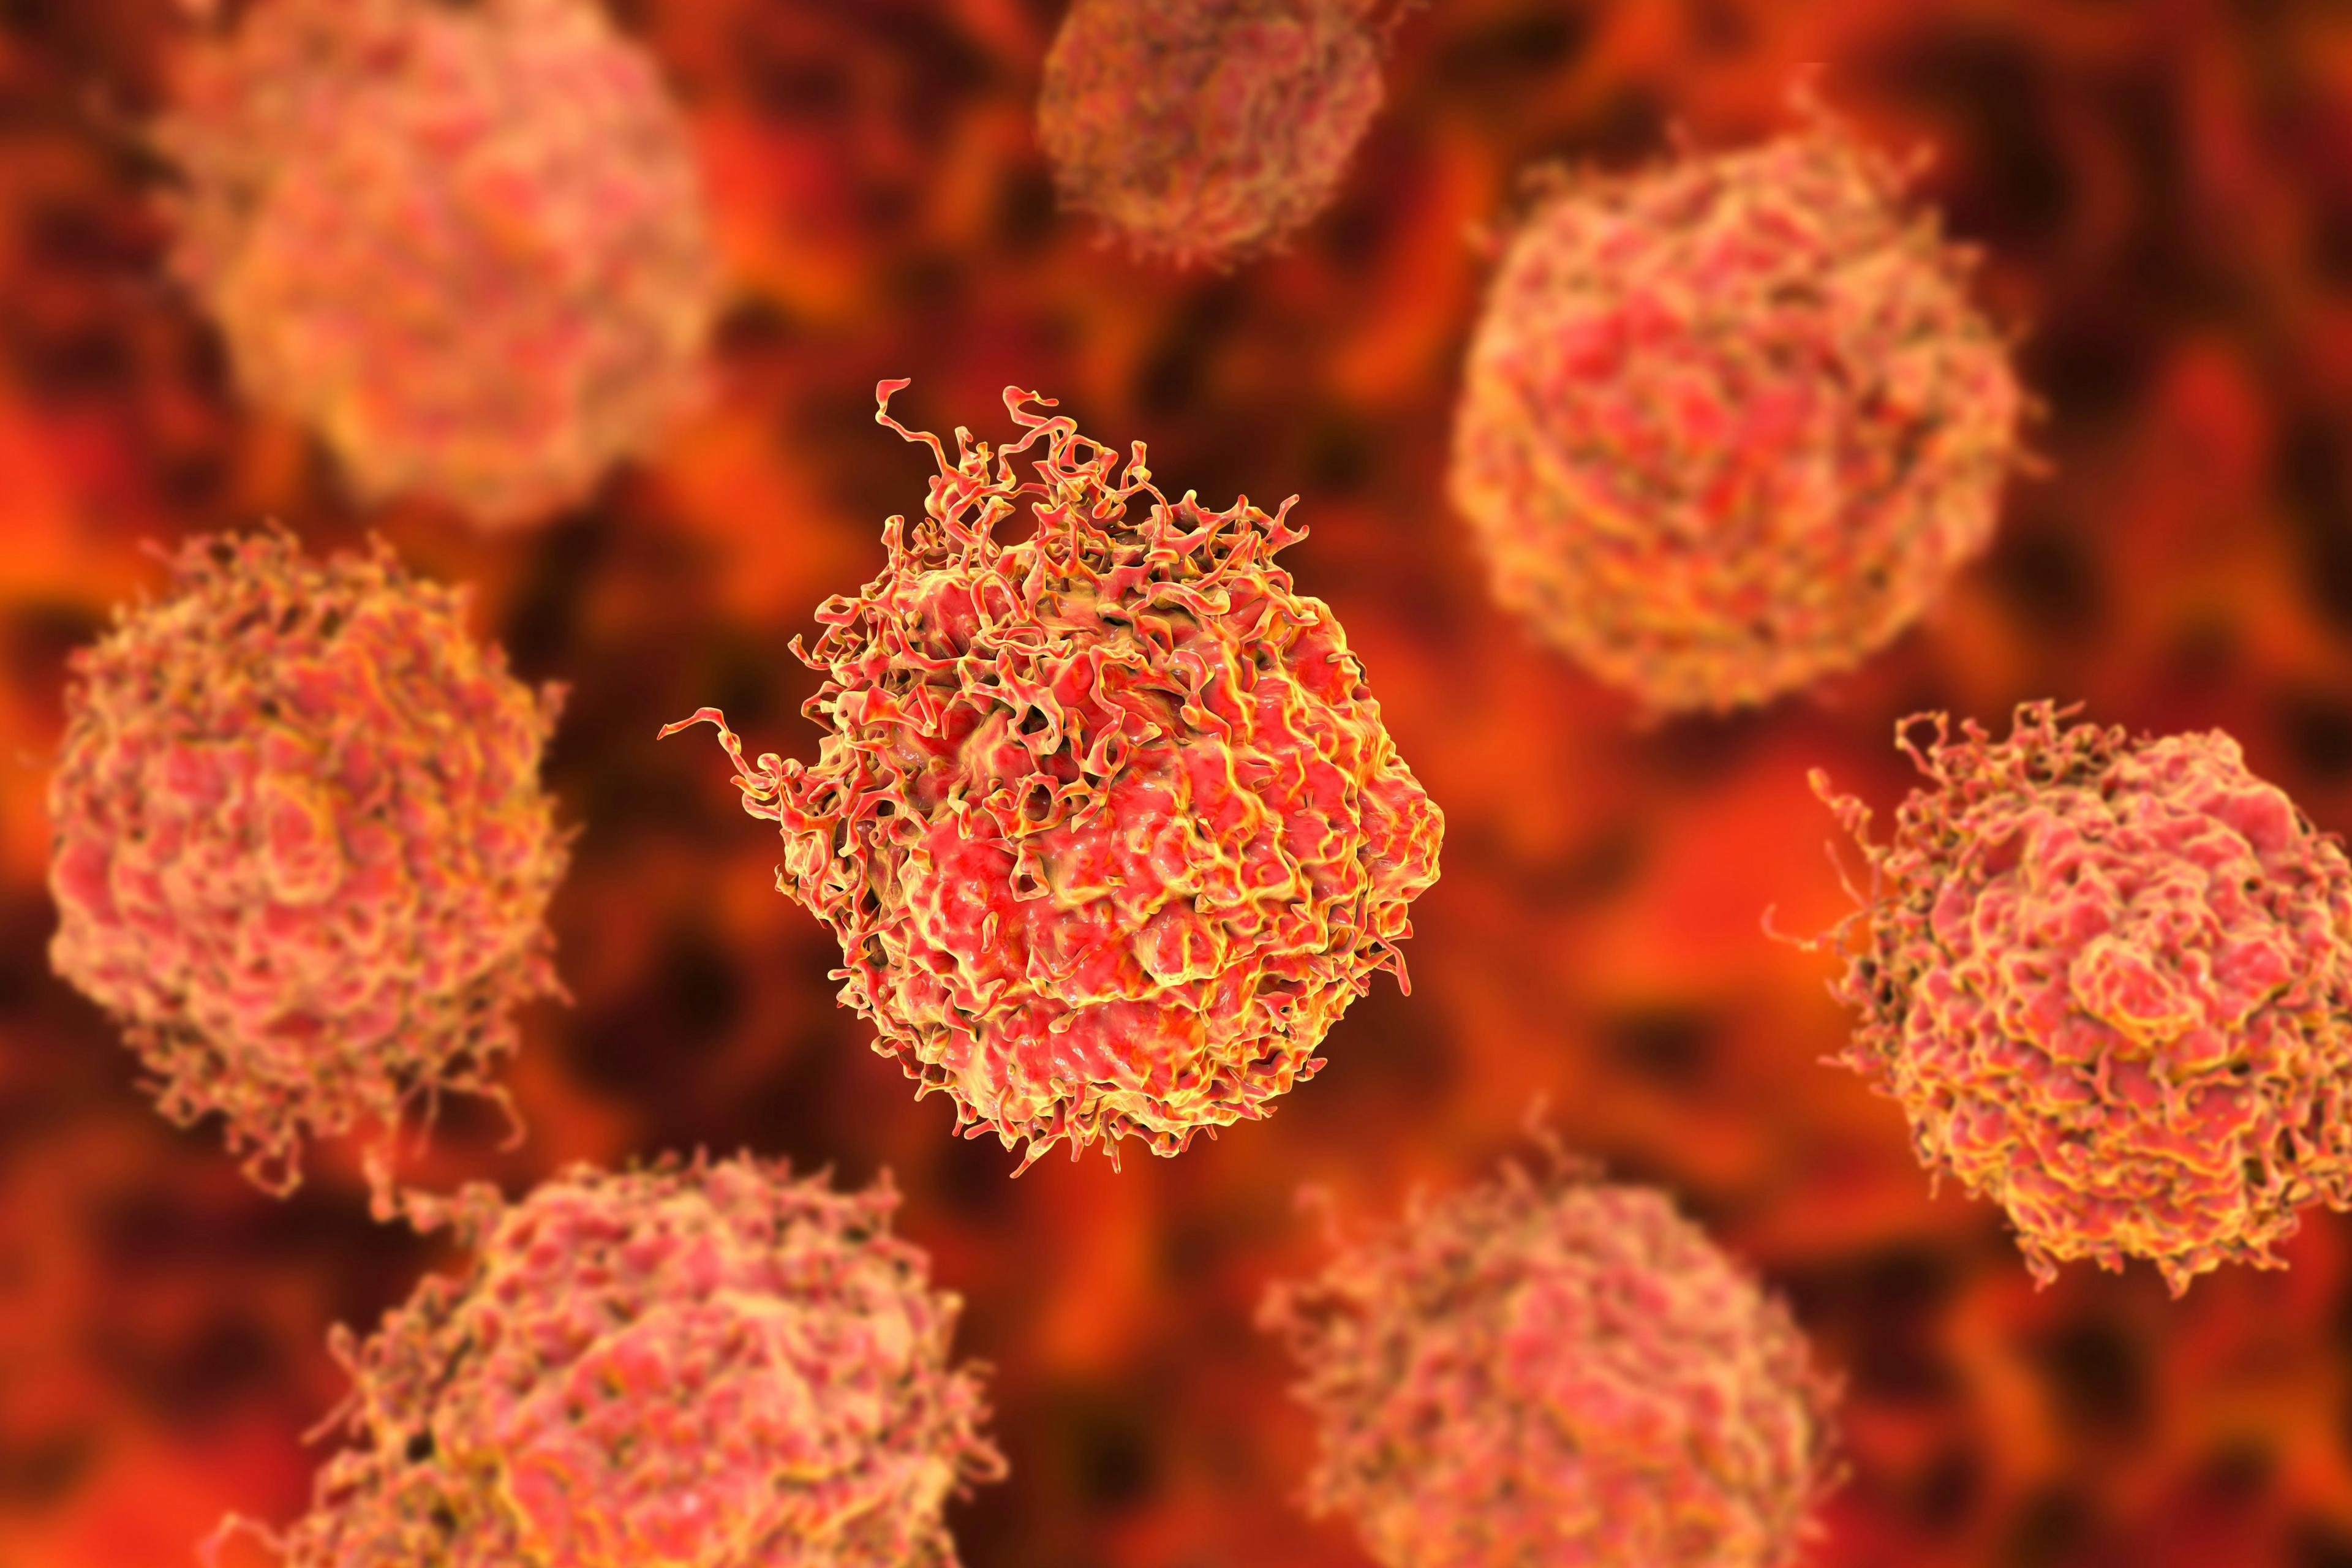 Prostate cancer cells, 3D illustration. Prostate cancer awareness image | Image Credit: © Dr_Microbe -www.stock.adobe.com